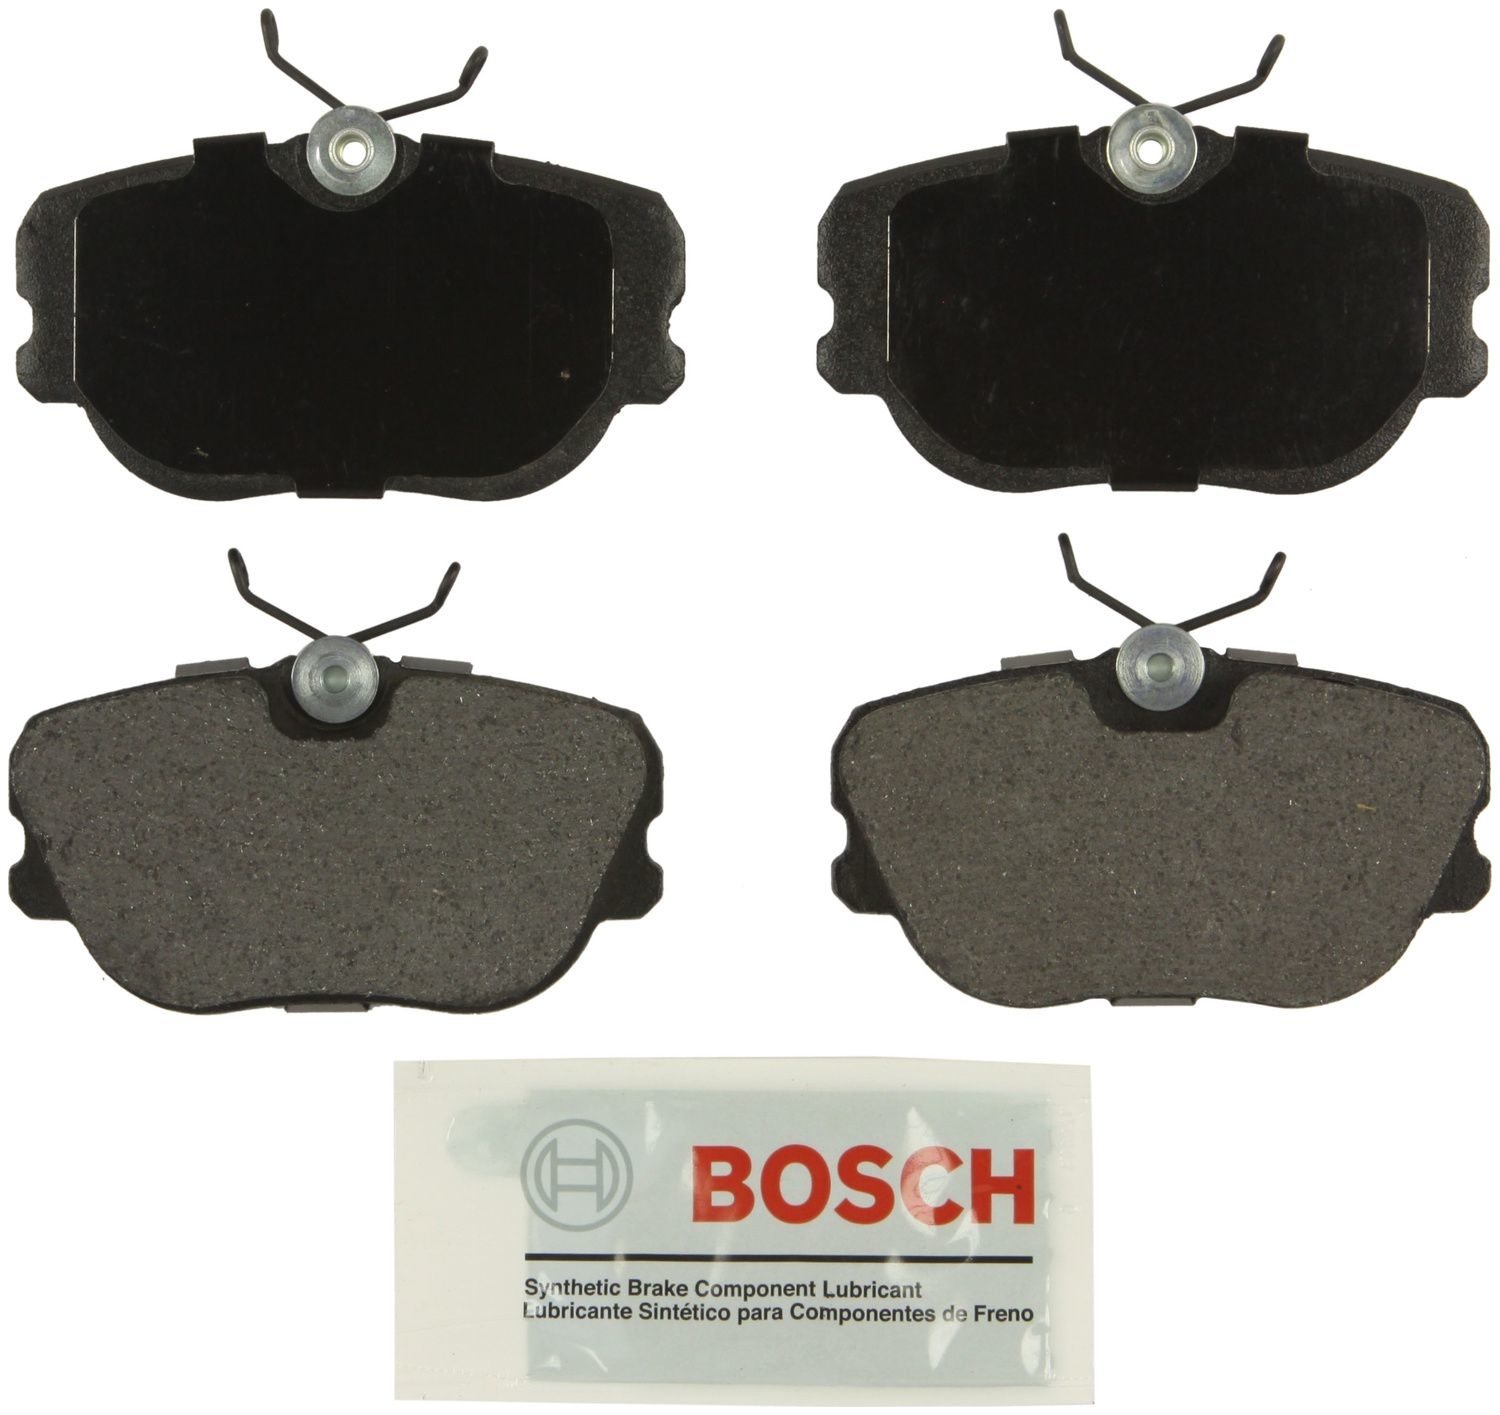 BOSCH BRAKE - Bosch Blue Semi-Metallic Brake Pads (Rear) - BQC BE493